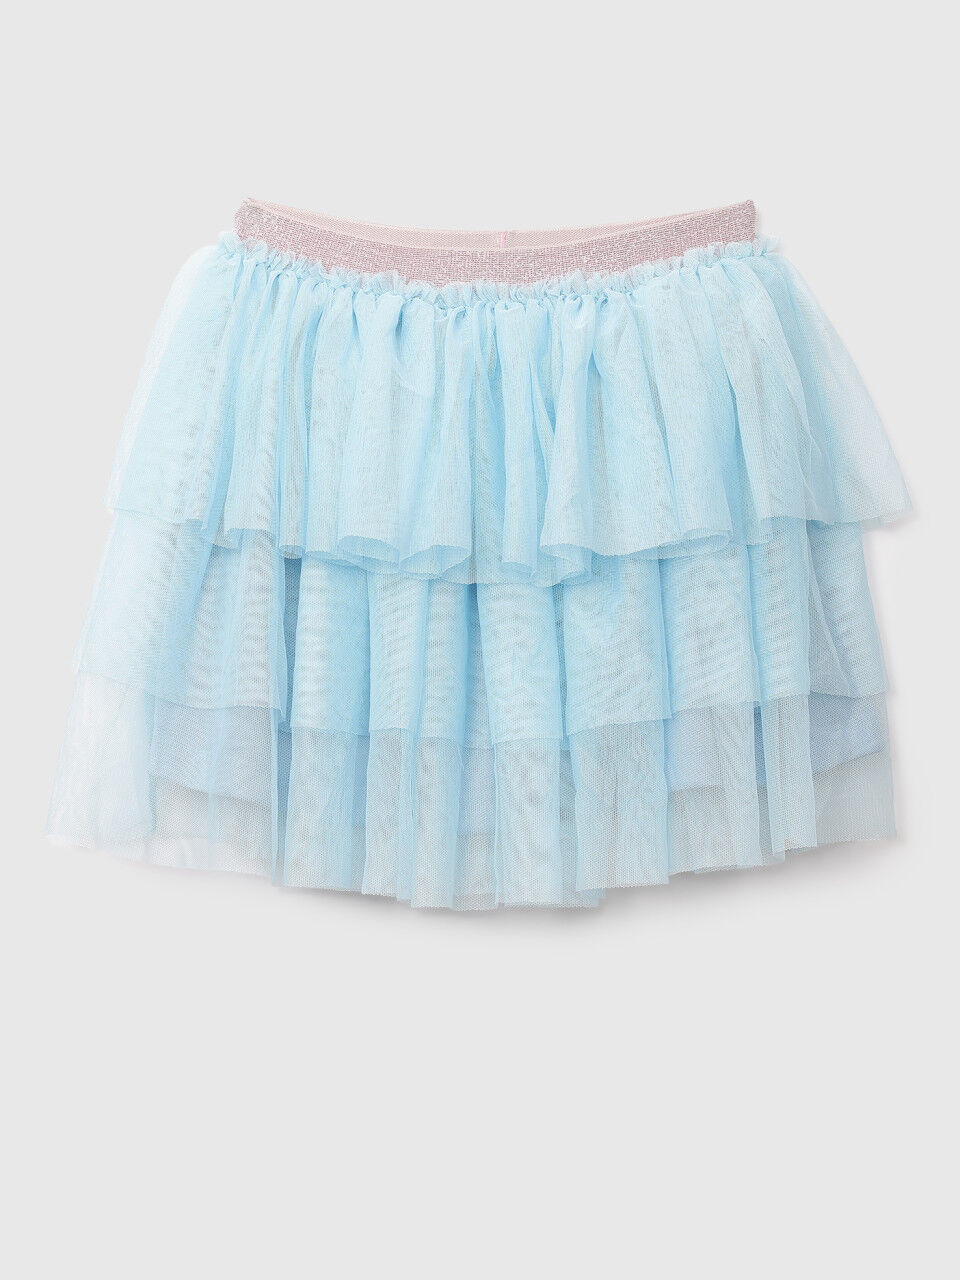 United Colors Of Benetton Girls Sky Mini Tulle Skirt